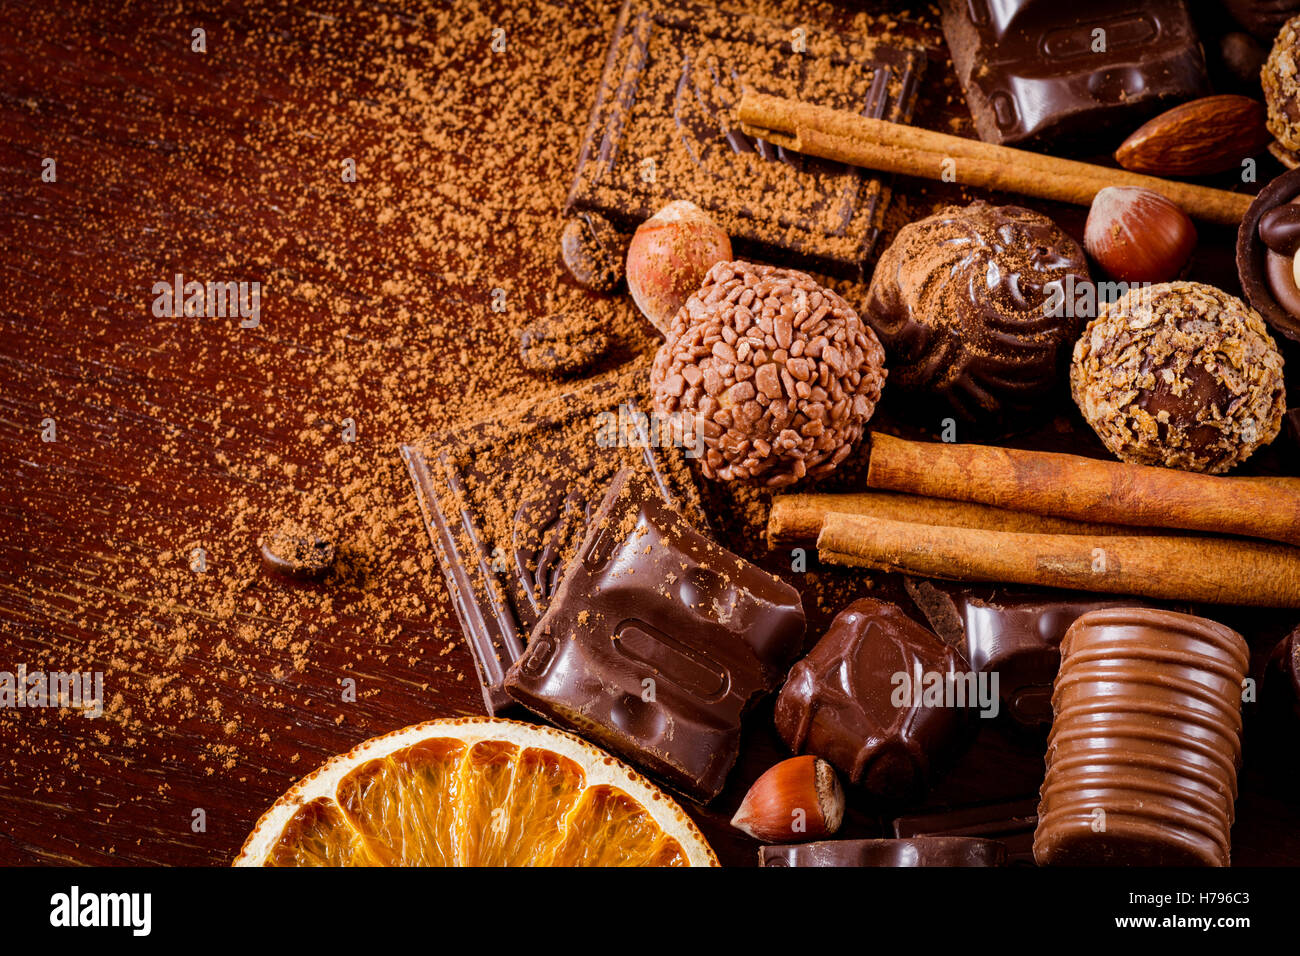 Assortiment de chocolats, truffes, bonbons, chocolat, d'épices et d'écorces de noix. Des chocolats de luxe. Banque D'Images